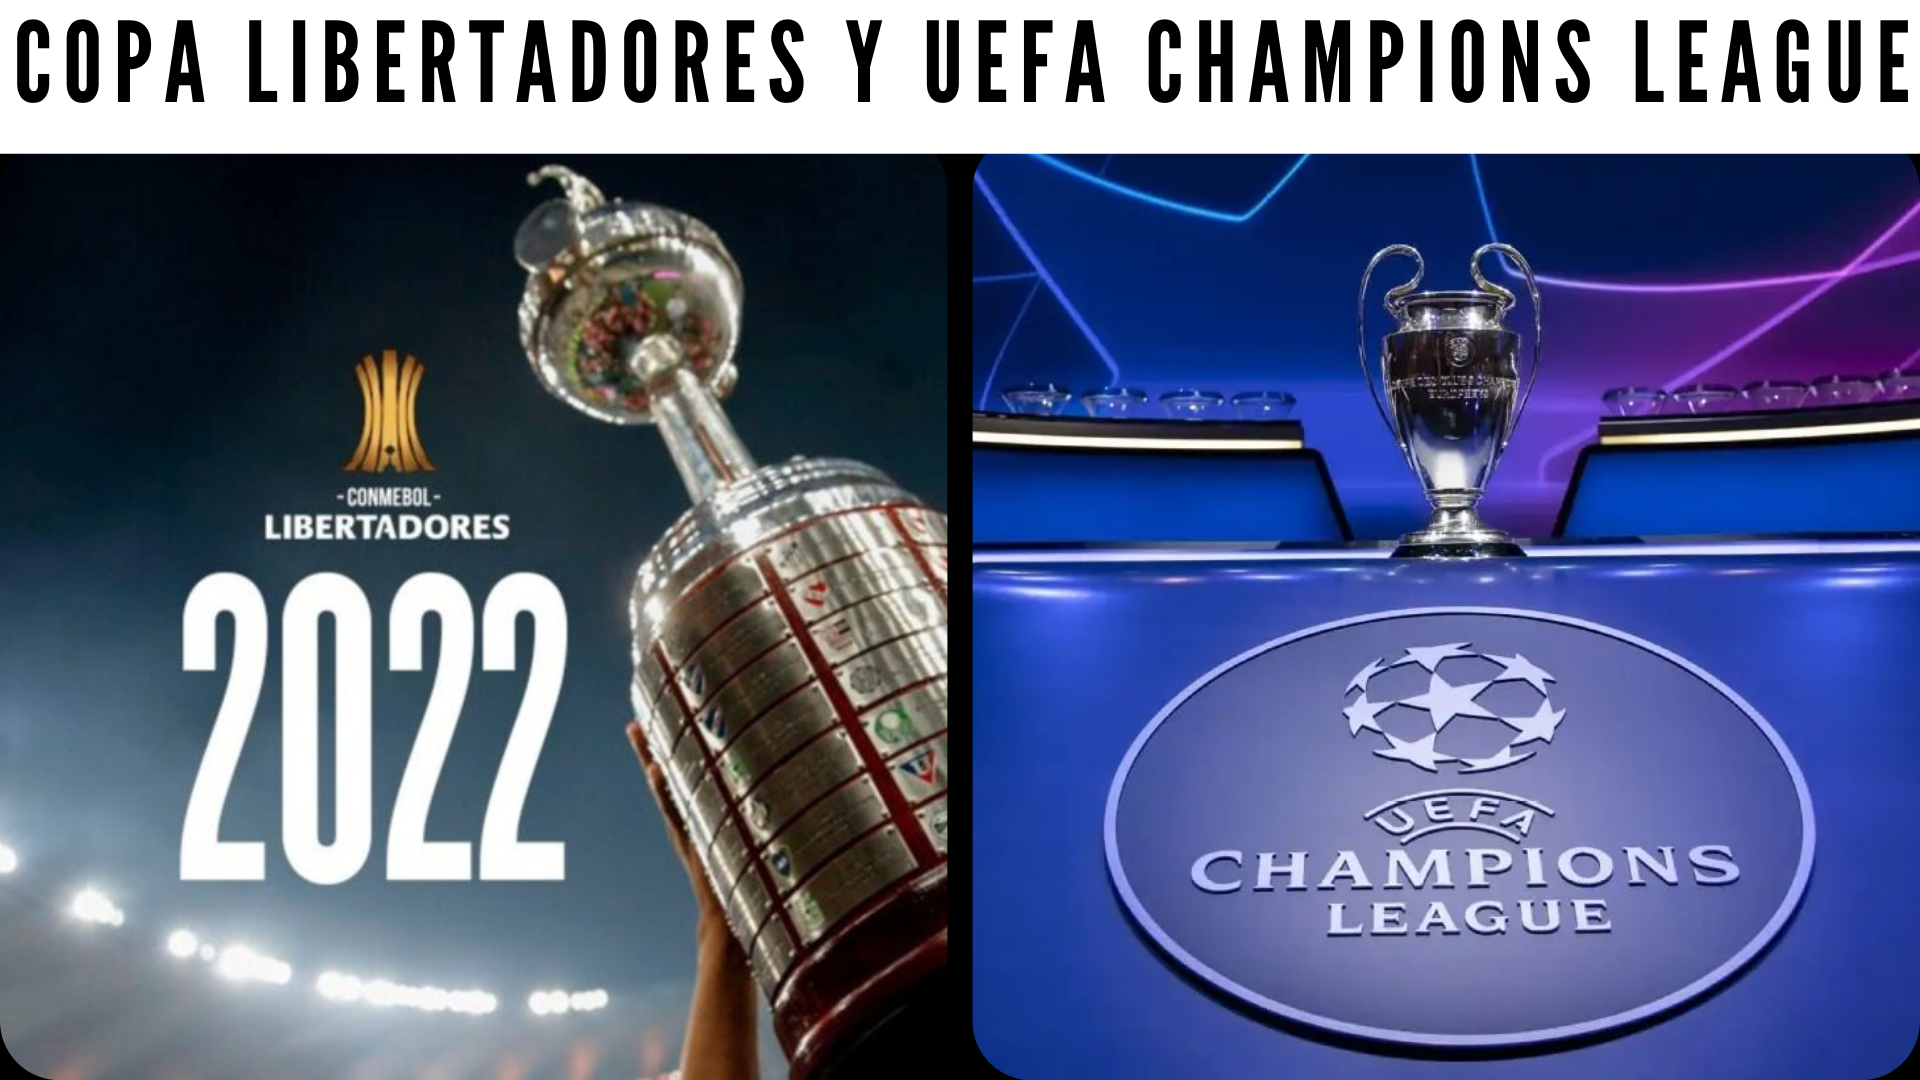 Copa Libertadores y UEFA Champions League.png